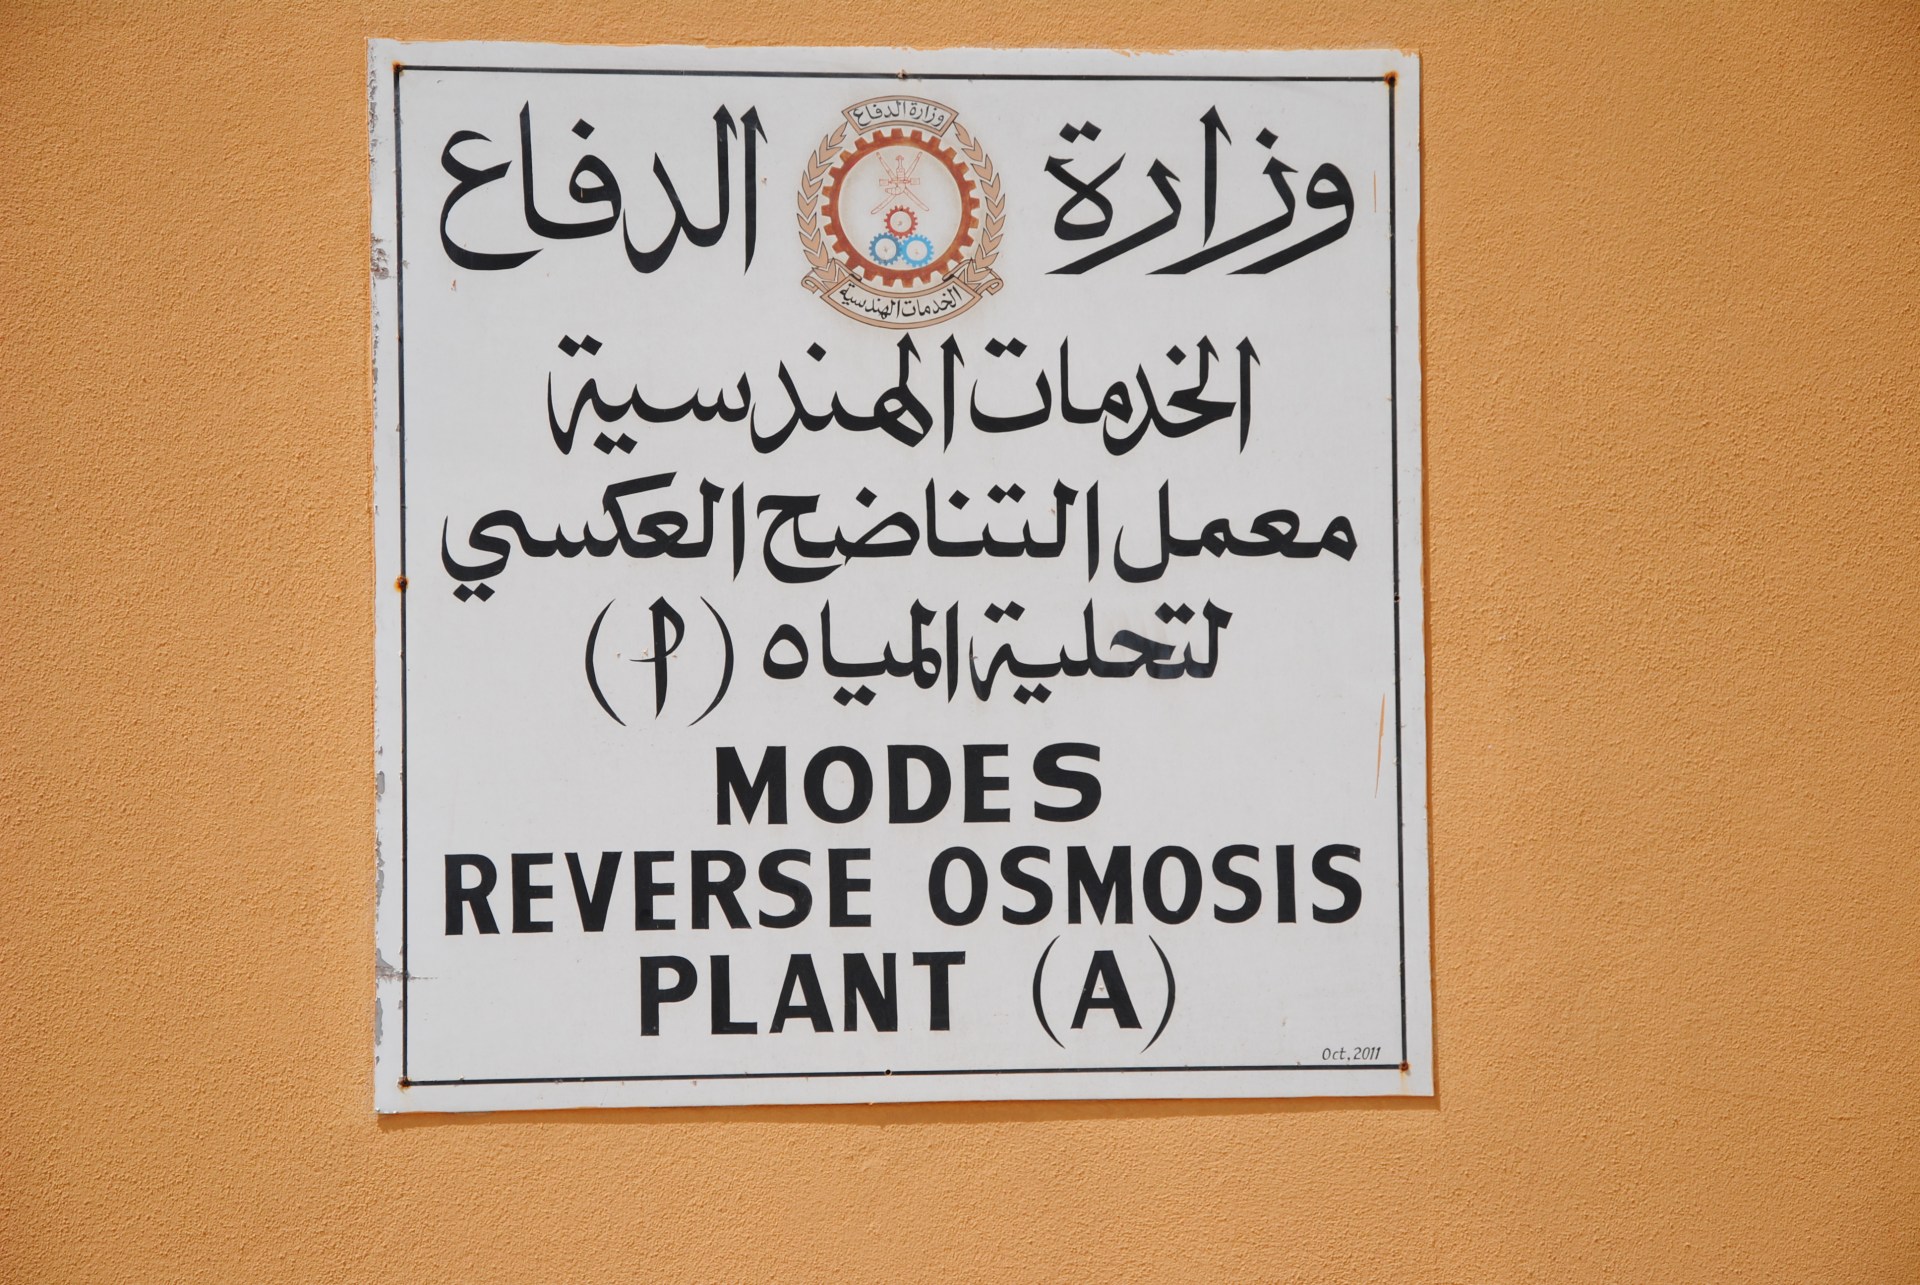 Ein Schild mit der Aufschrift "Modes Reverse Osmosis Plant (A)"